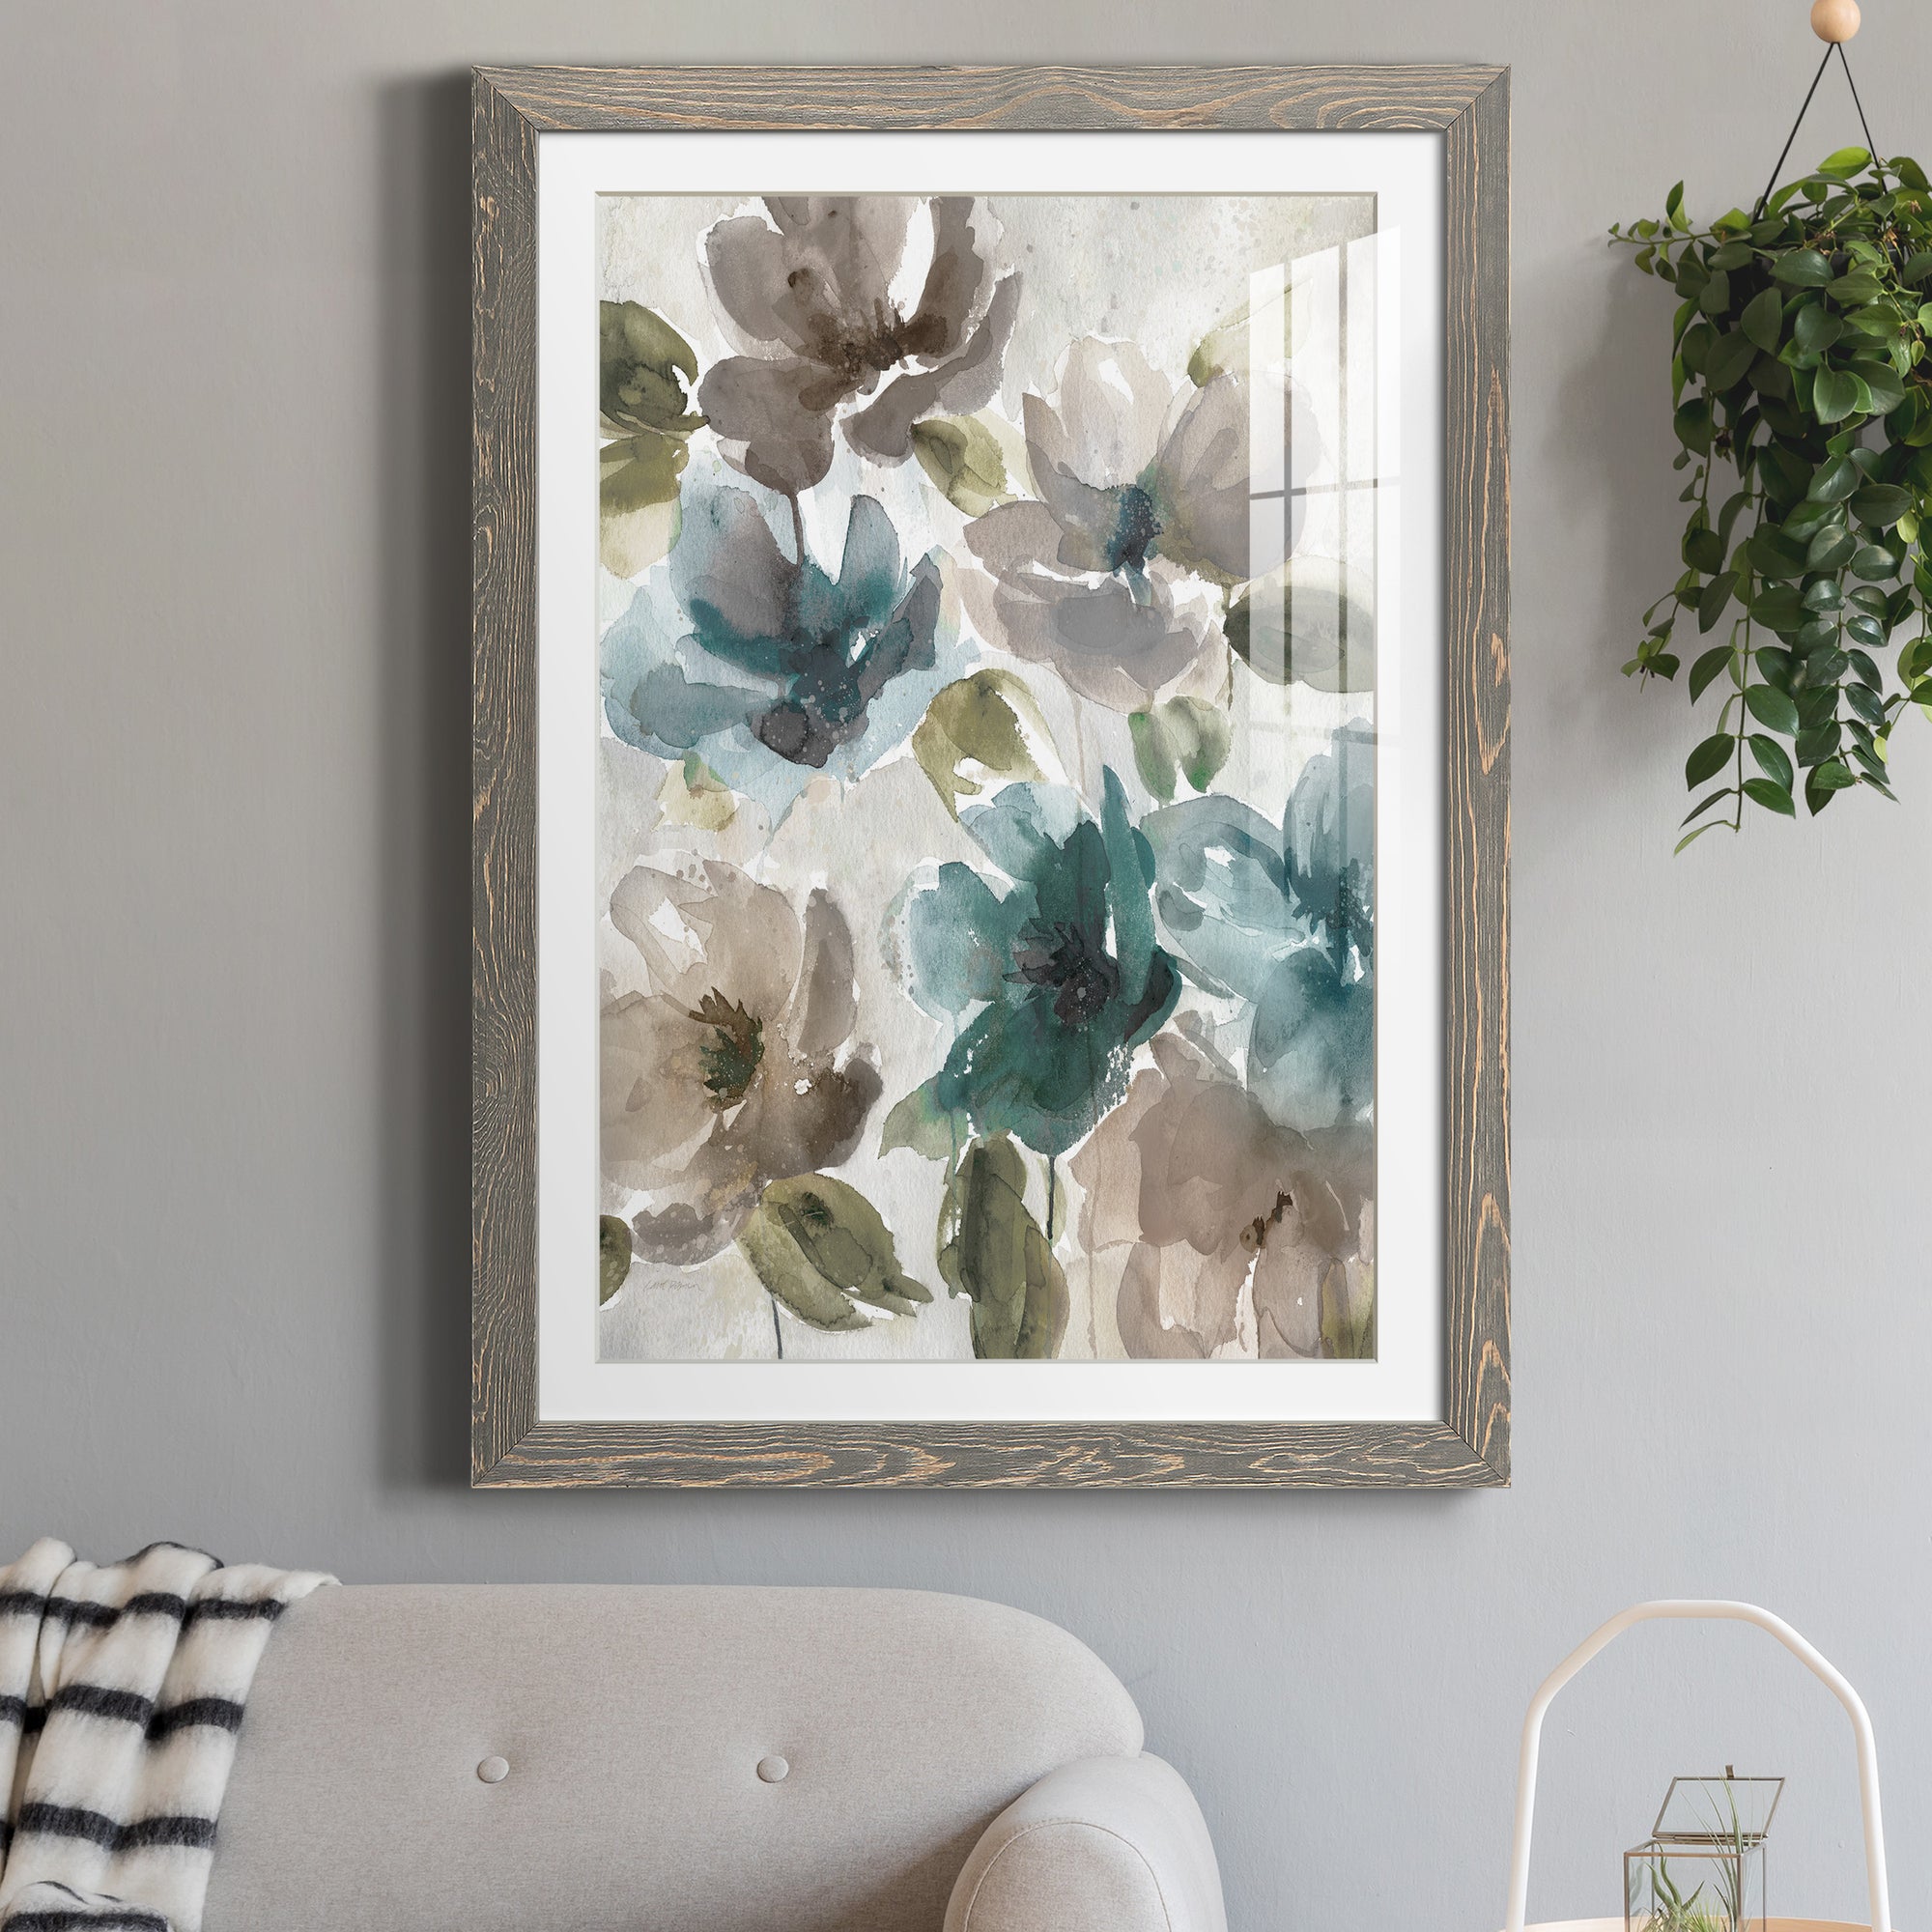 Topaz Garden I - Premium Framed Print - Distressed Barnwood Frame - Ready to Hang